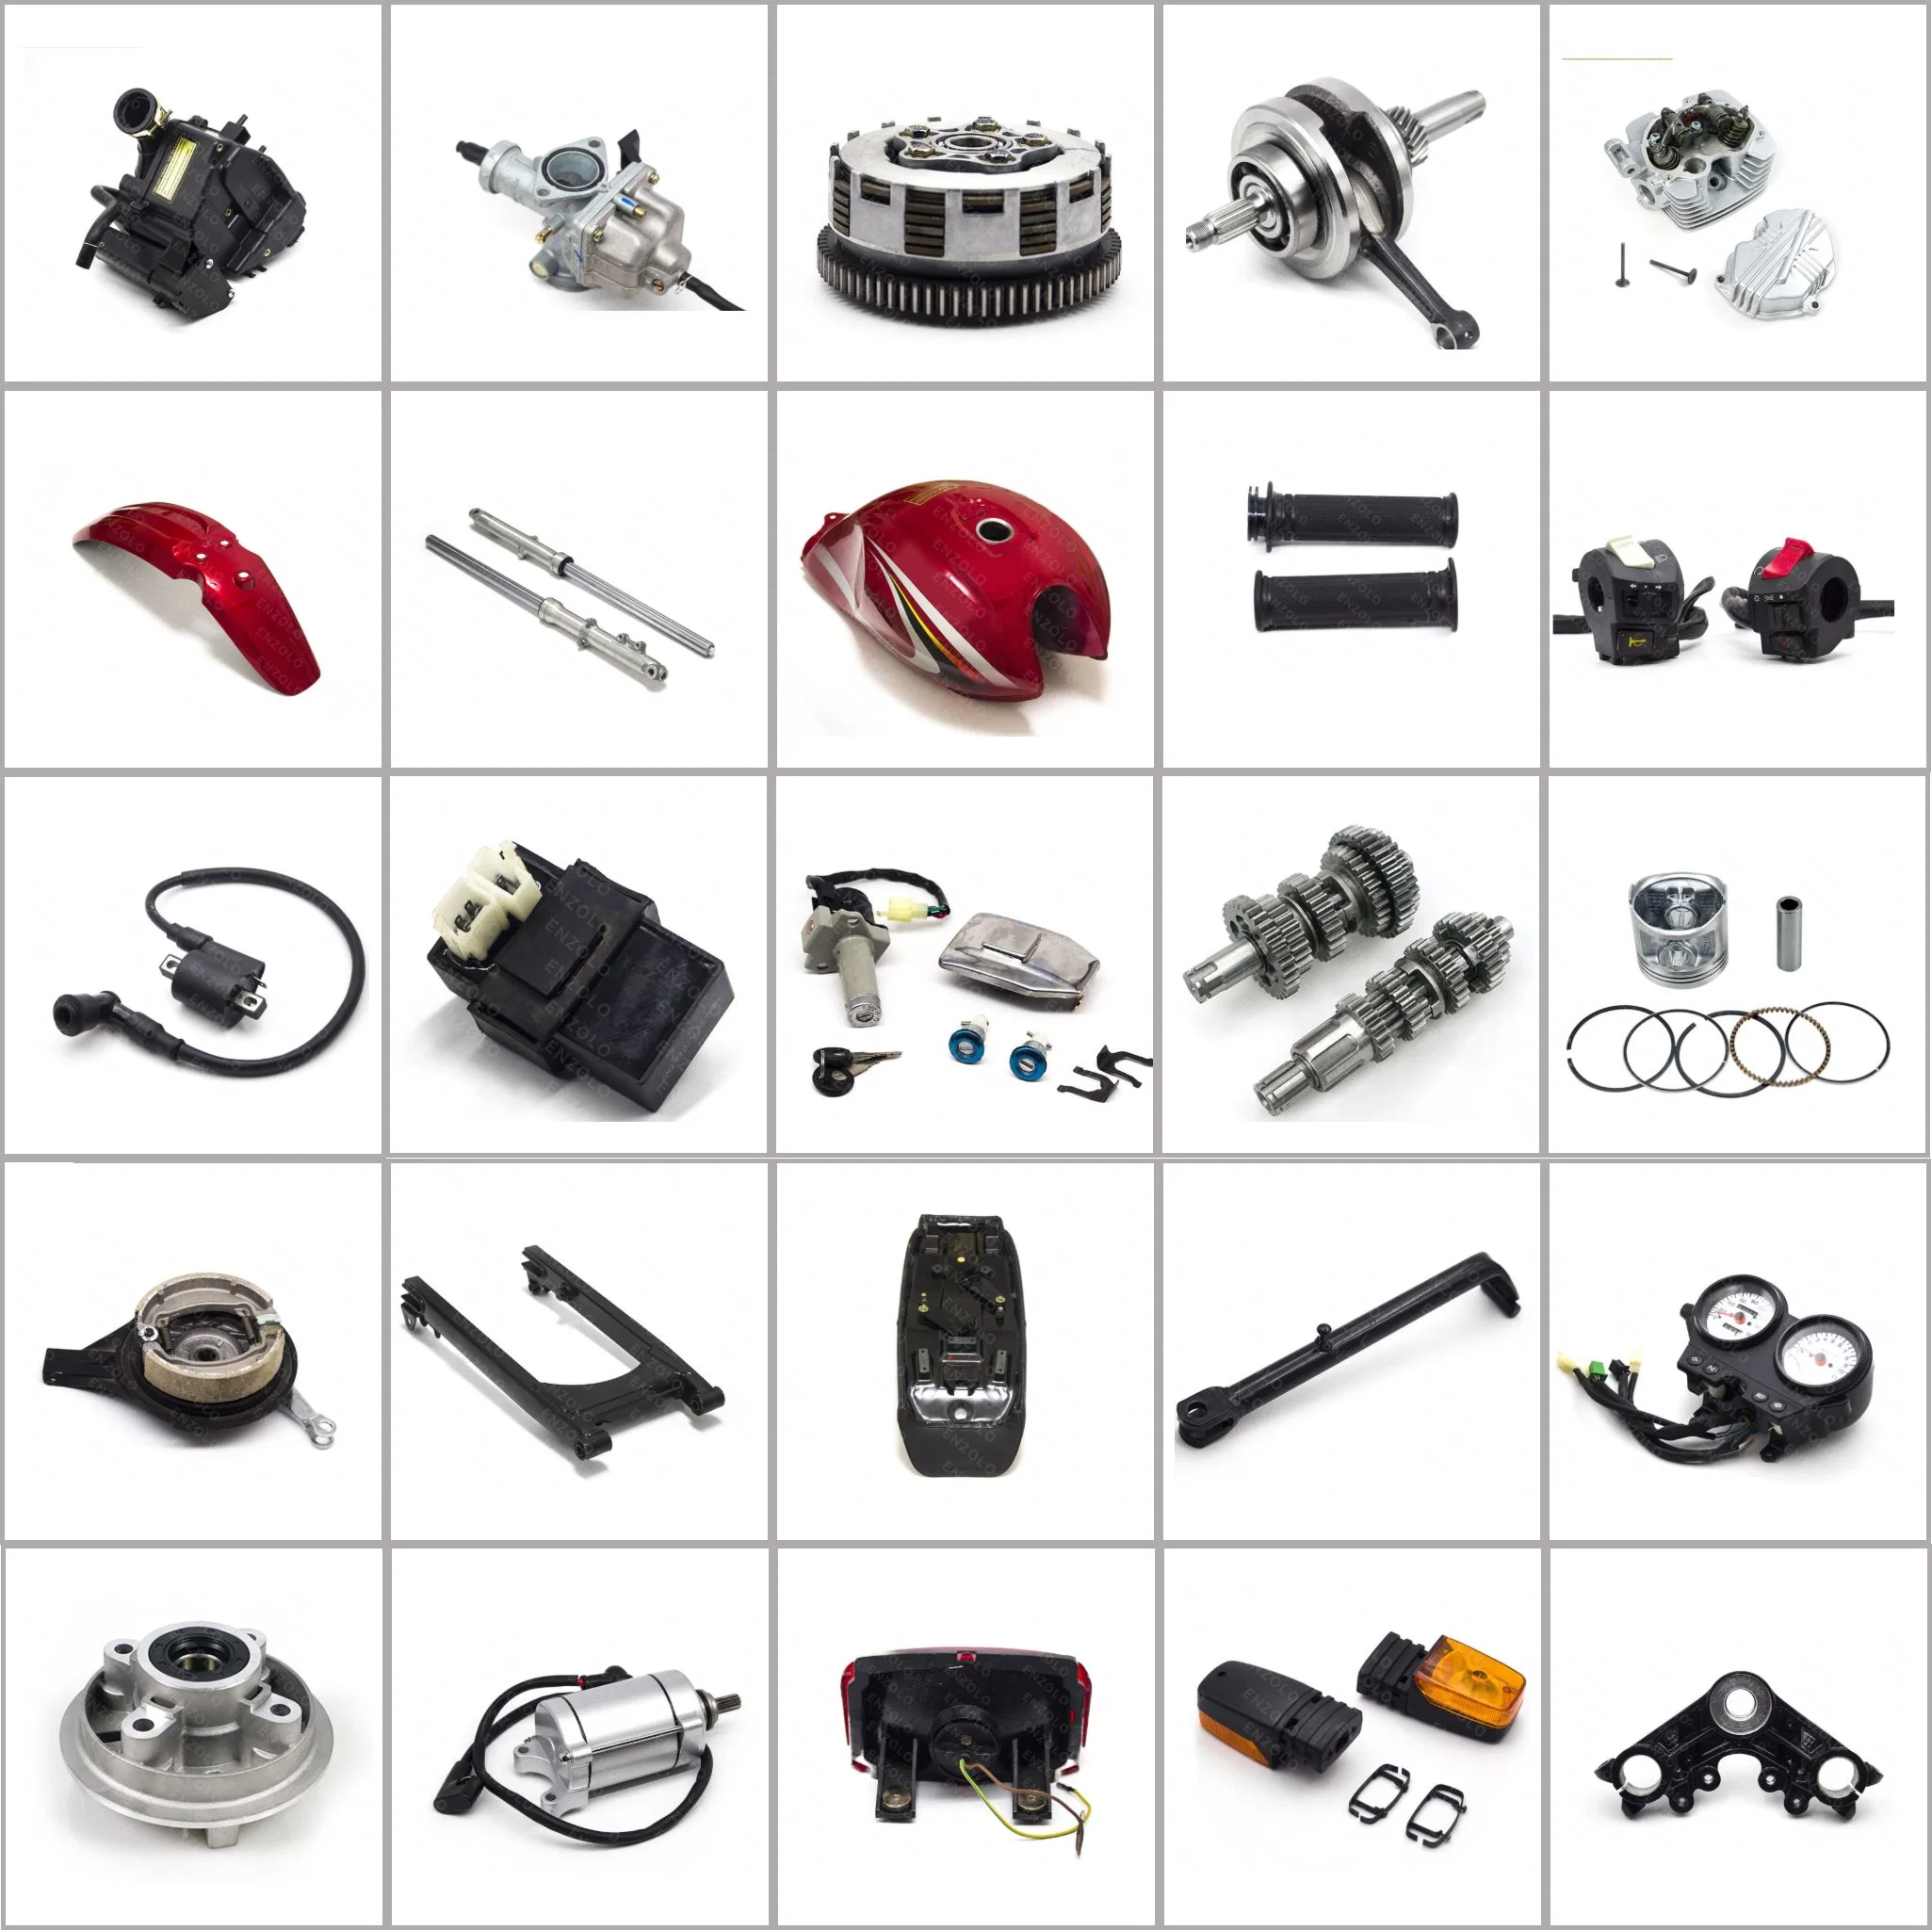 Motorradteile für Bremsen/Elektrik/Motor und Getriebe/Karosserie/Fahrwerk und Federung/Beleuchtung für Honda/YAMAHA/Suzuki/Fernseher/Zongshen/Haojue/Dayun